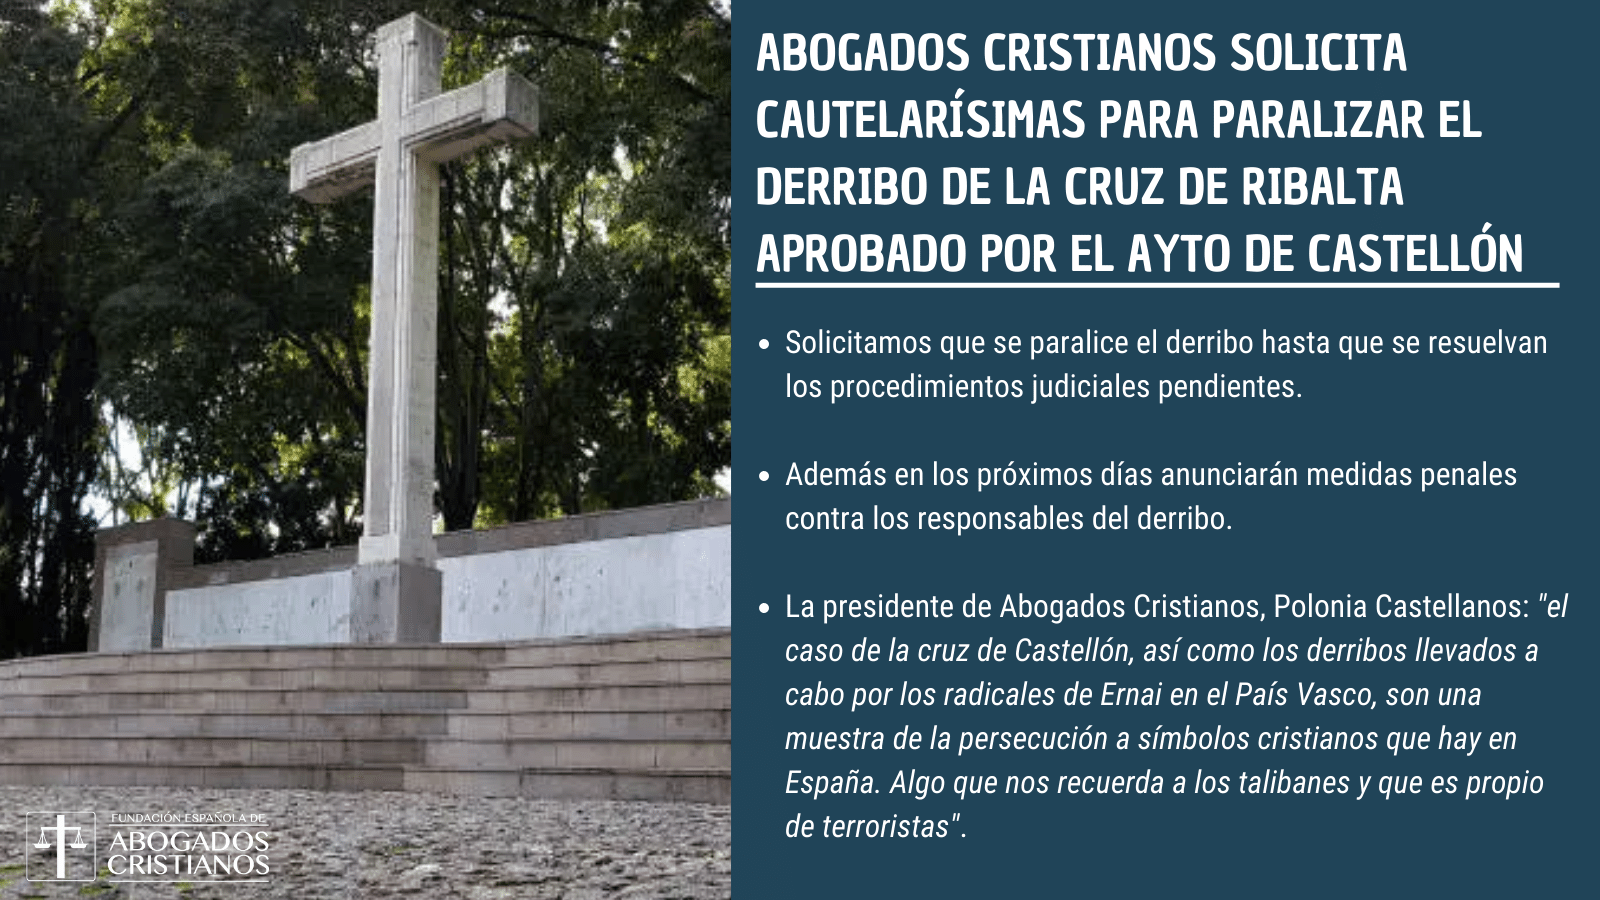 Abogados Cristianos pide "cautelarsmas" para frenar el derribo de la cruz del Ribalta de Castelln y anuncia "medidas penales"